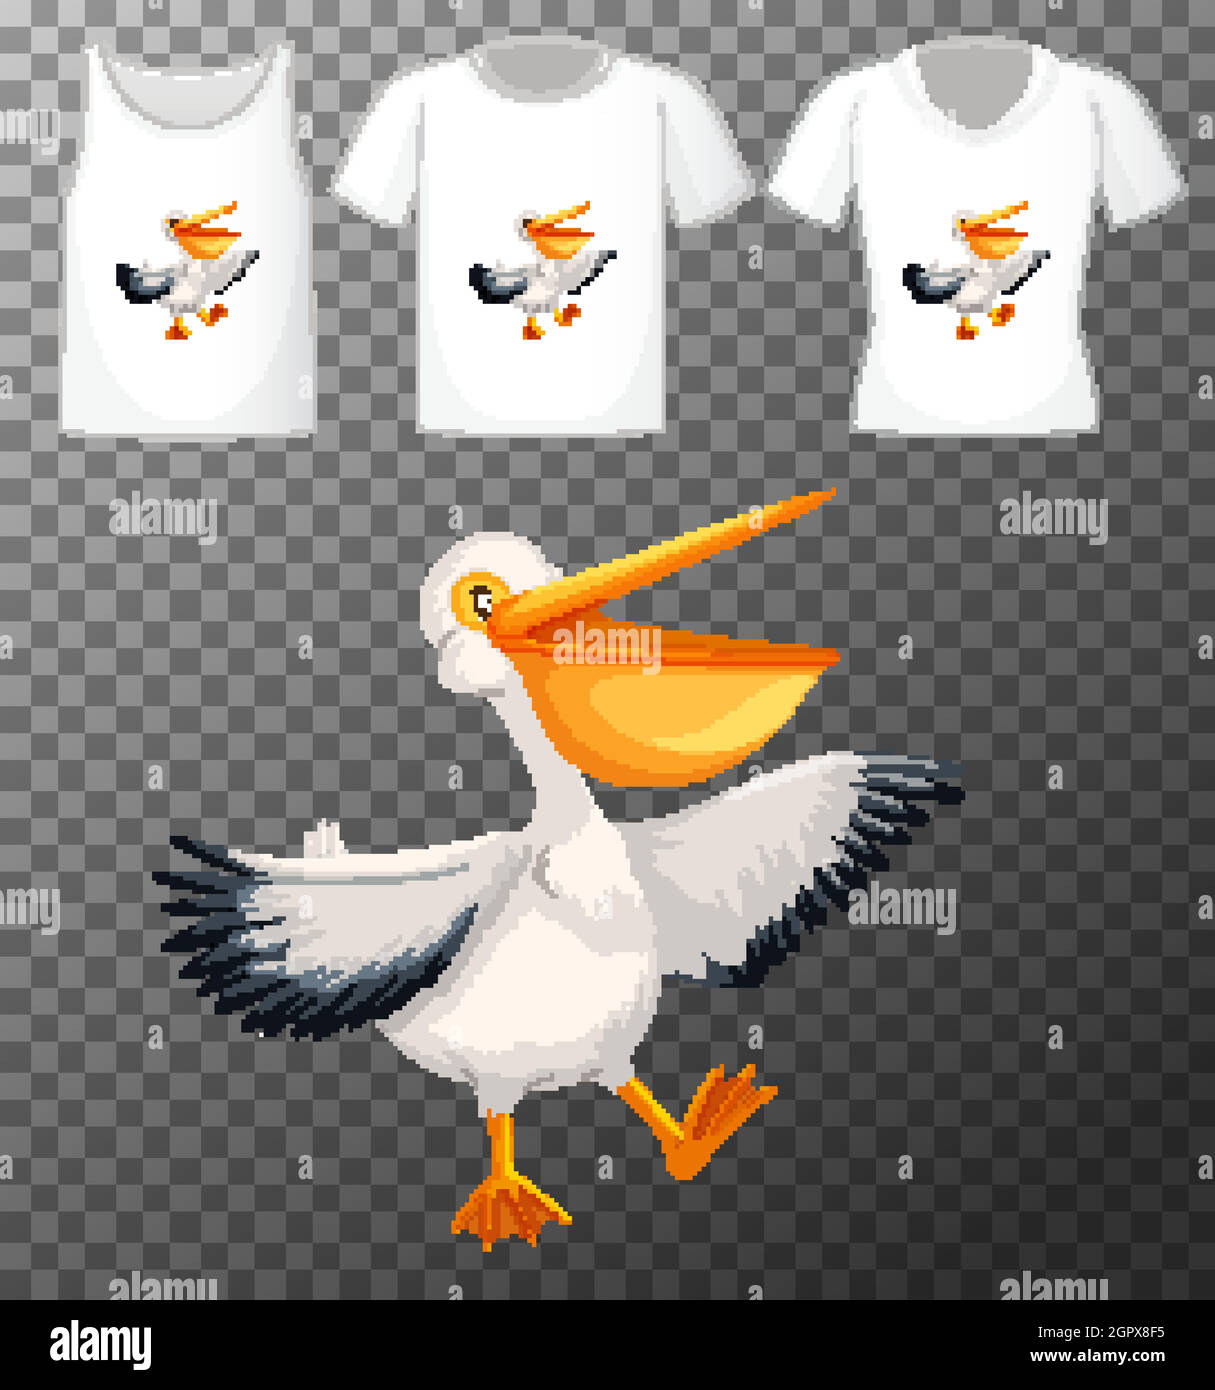 Set von verschiedenen Hemden mit braunen pelikanischen Zeichentrickfigur isoliert auf transparentem Hintergrund Stock Vektor